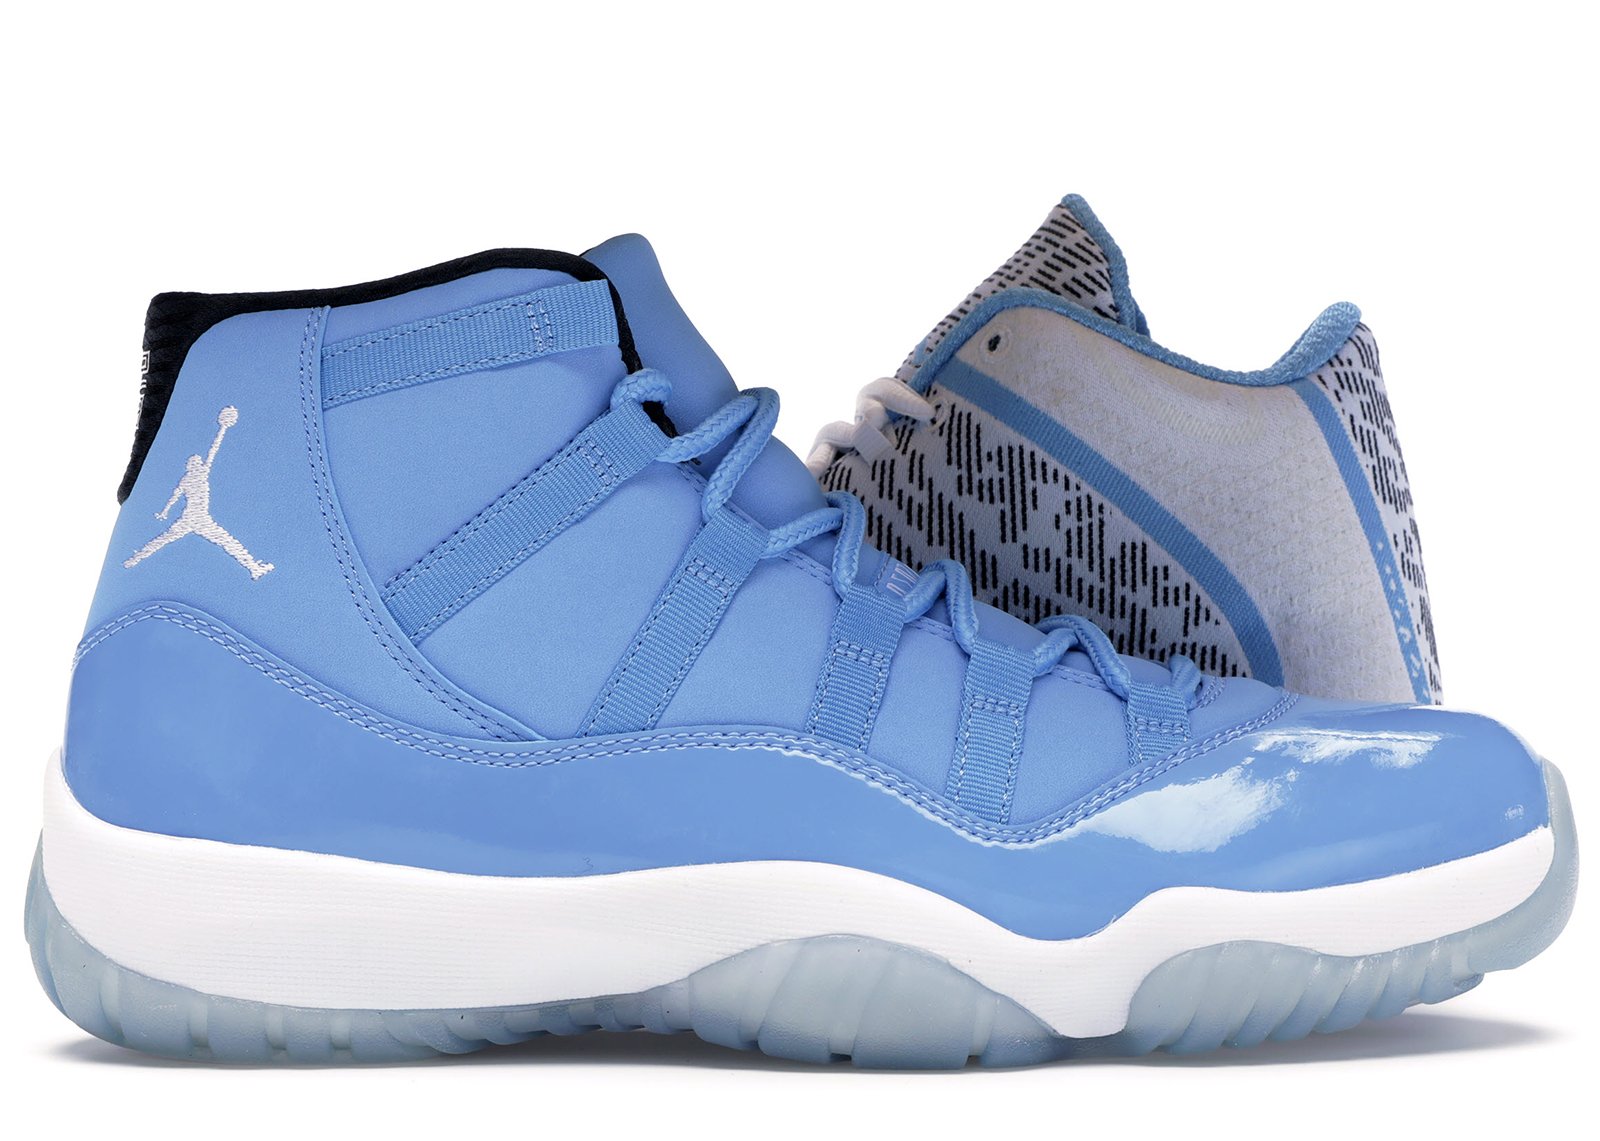 Jordan Ultimate Gift of Flight (11/29) sneakers